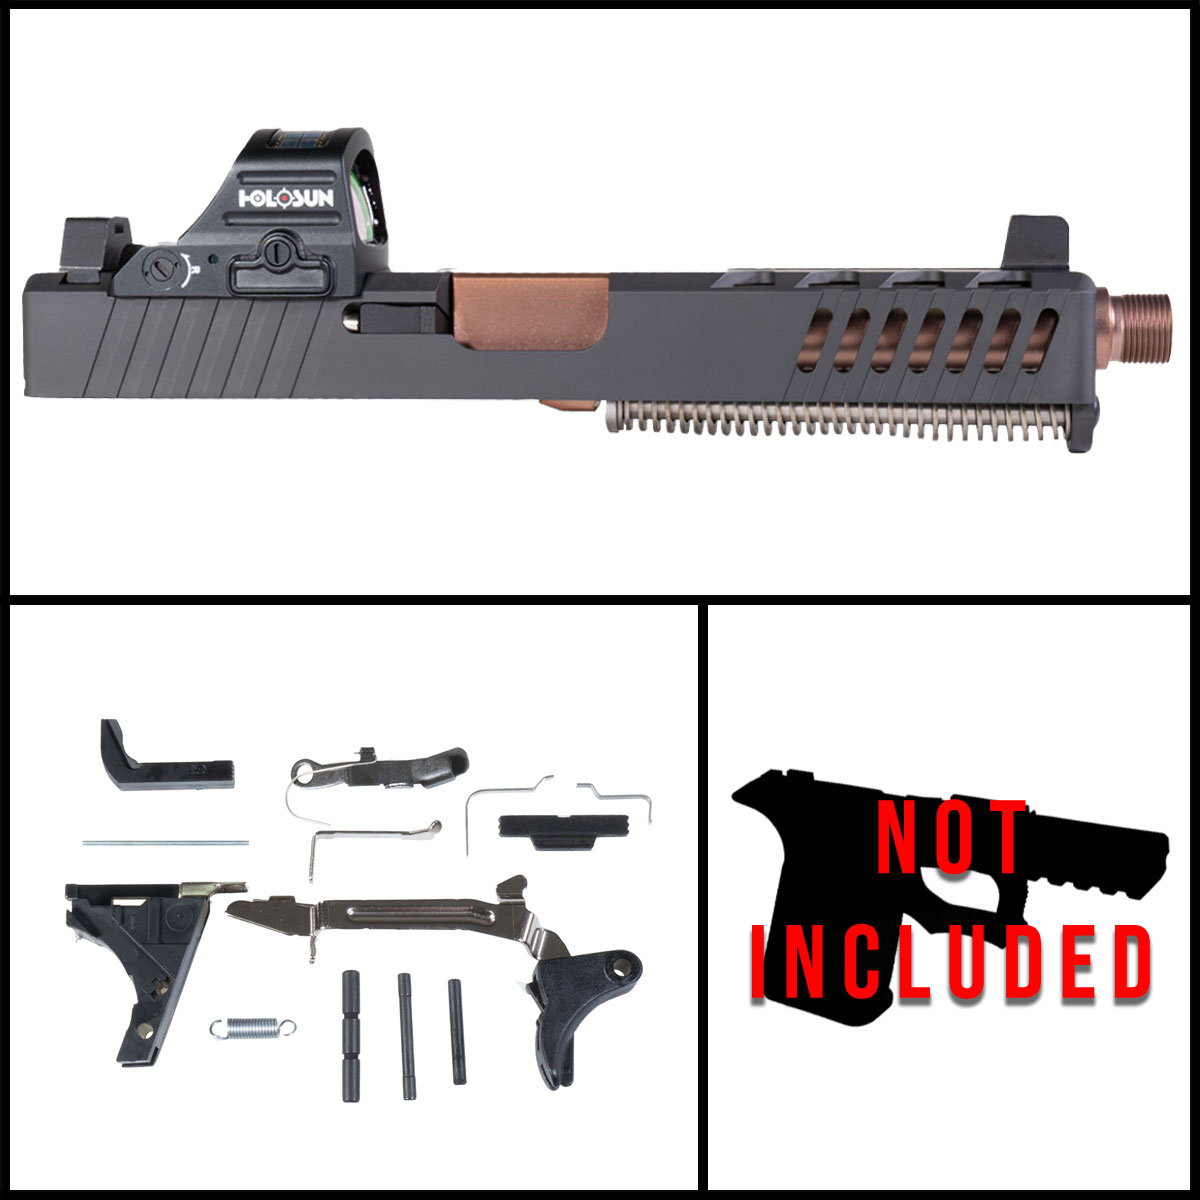 DTT 'Atalanta w/Red Dot' 9mm Full Pistol Build Kit (Everything Minus Frame) - Glock 17 Gen 1-3 Compatible